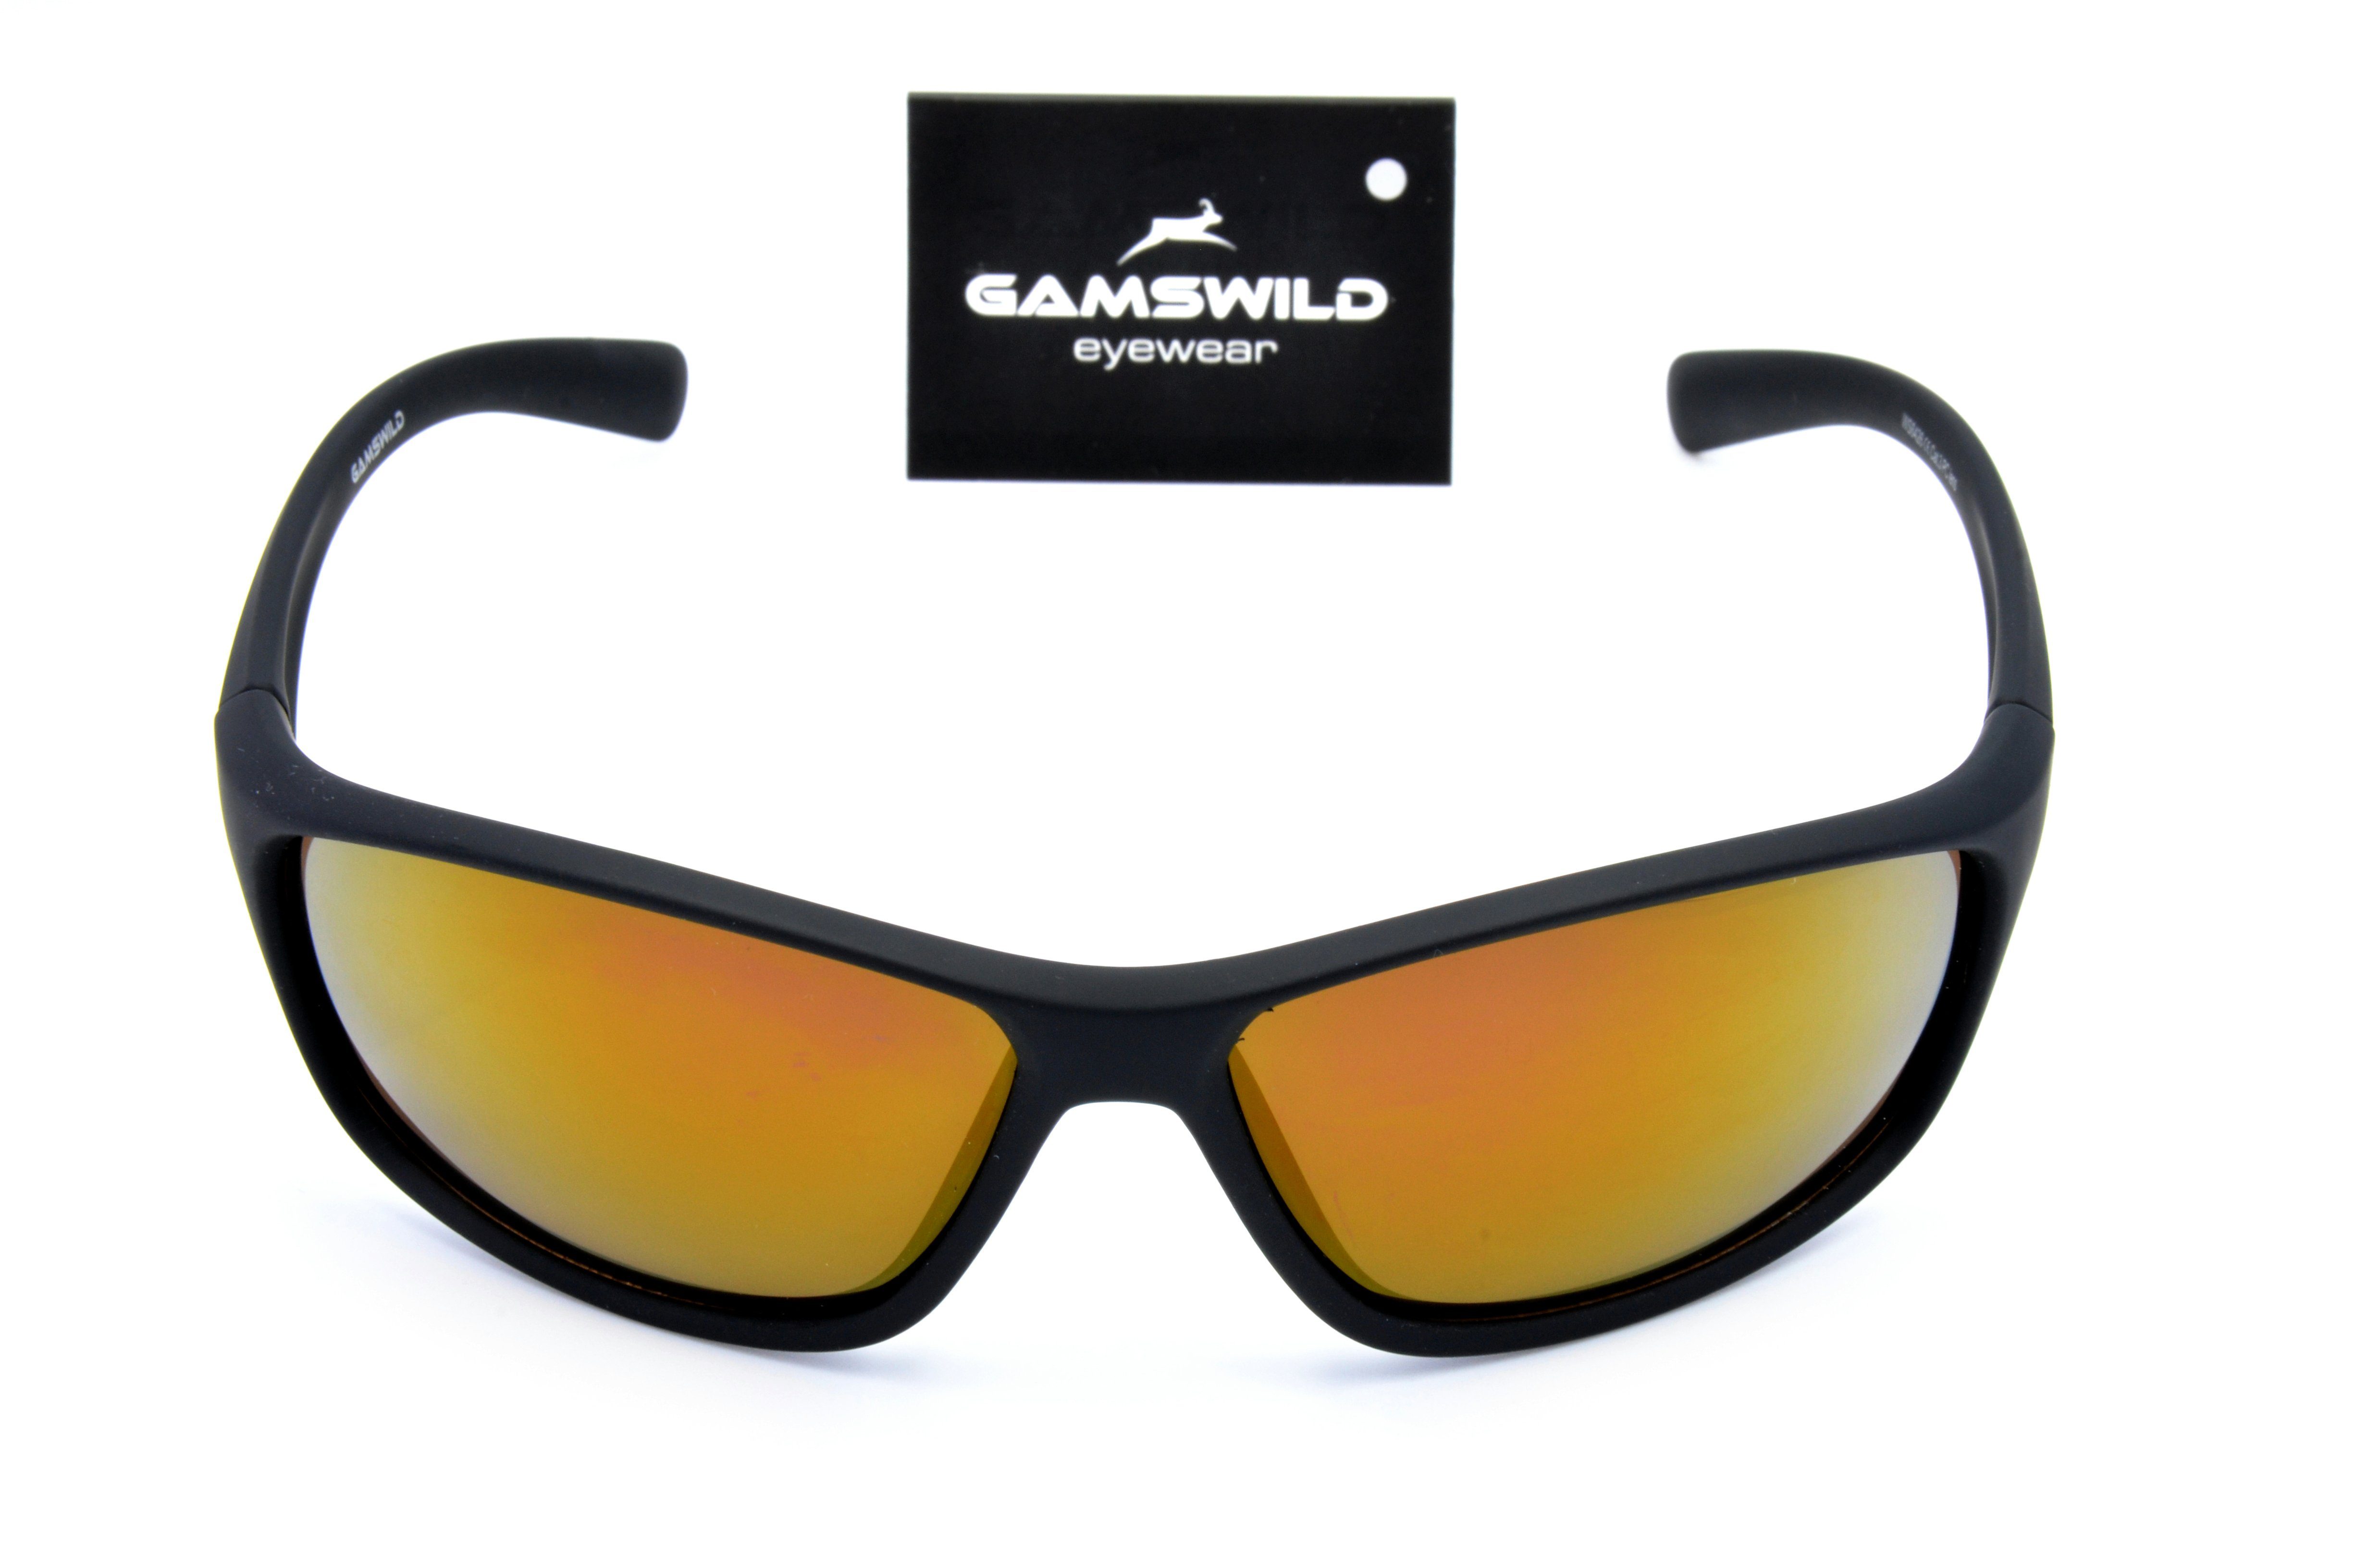 Skibrille Sportbrille Gamswild Fahrradbrille Damen Herren grün, Unisex, Sonnenbrille Softtouch violett WS6426 braun,